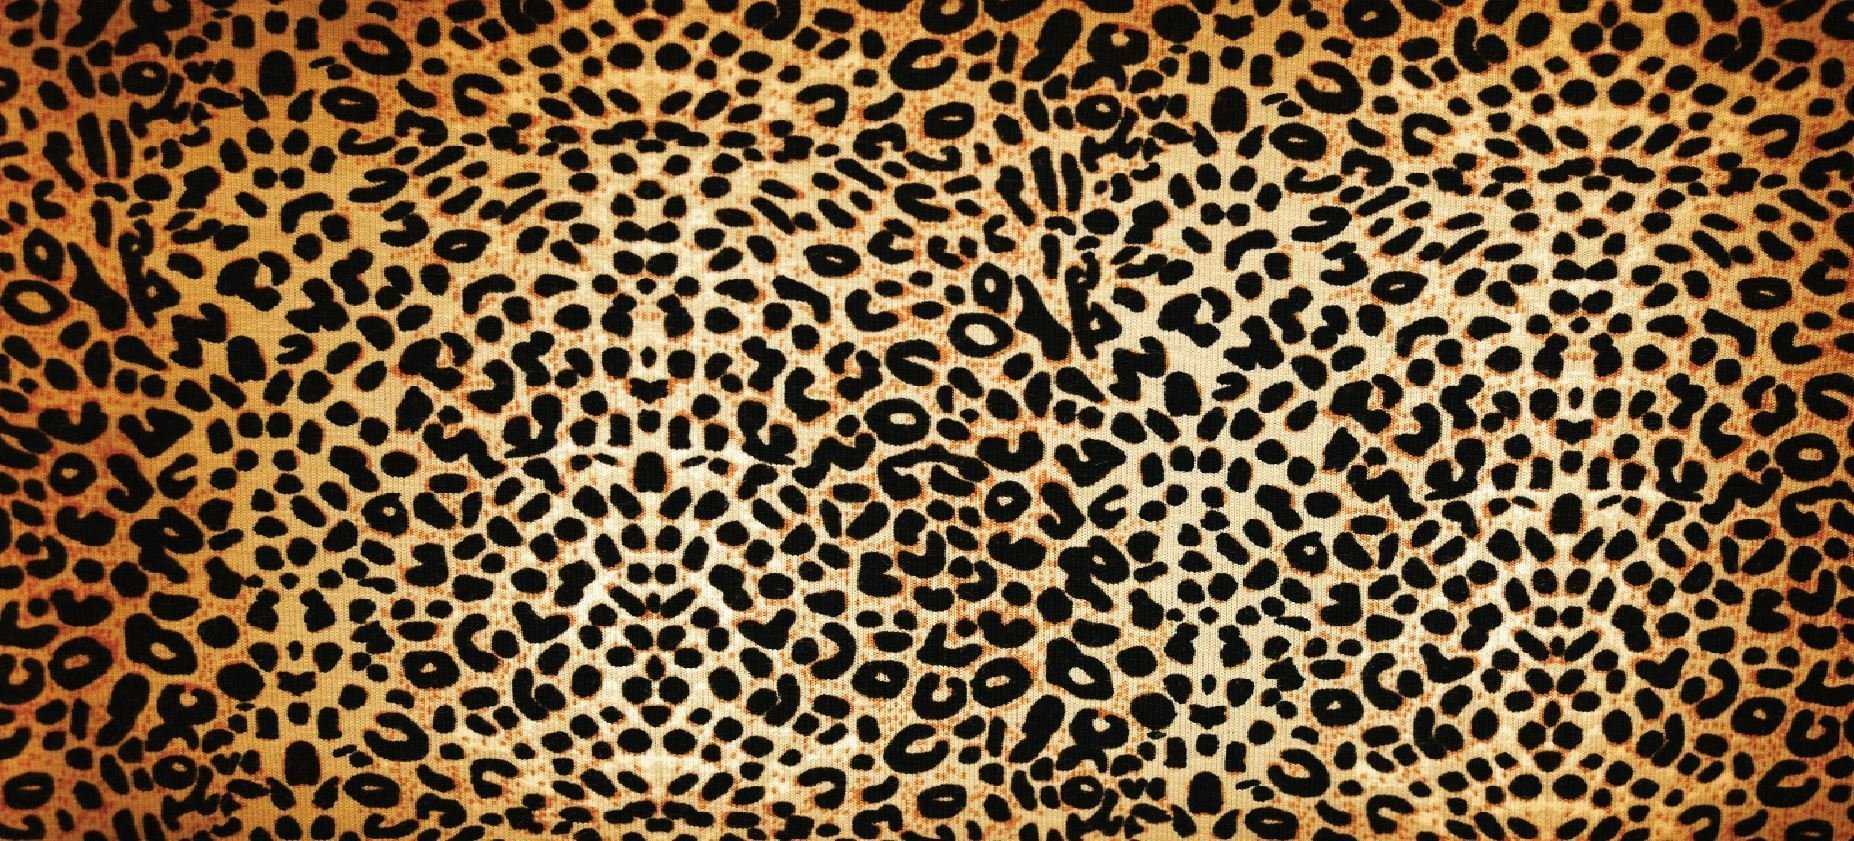 Леопардовый принт в моде – главные тенденции осени 2020